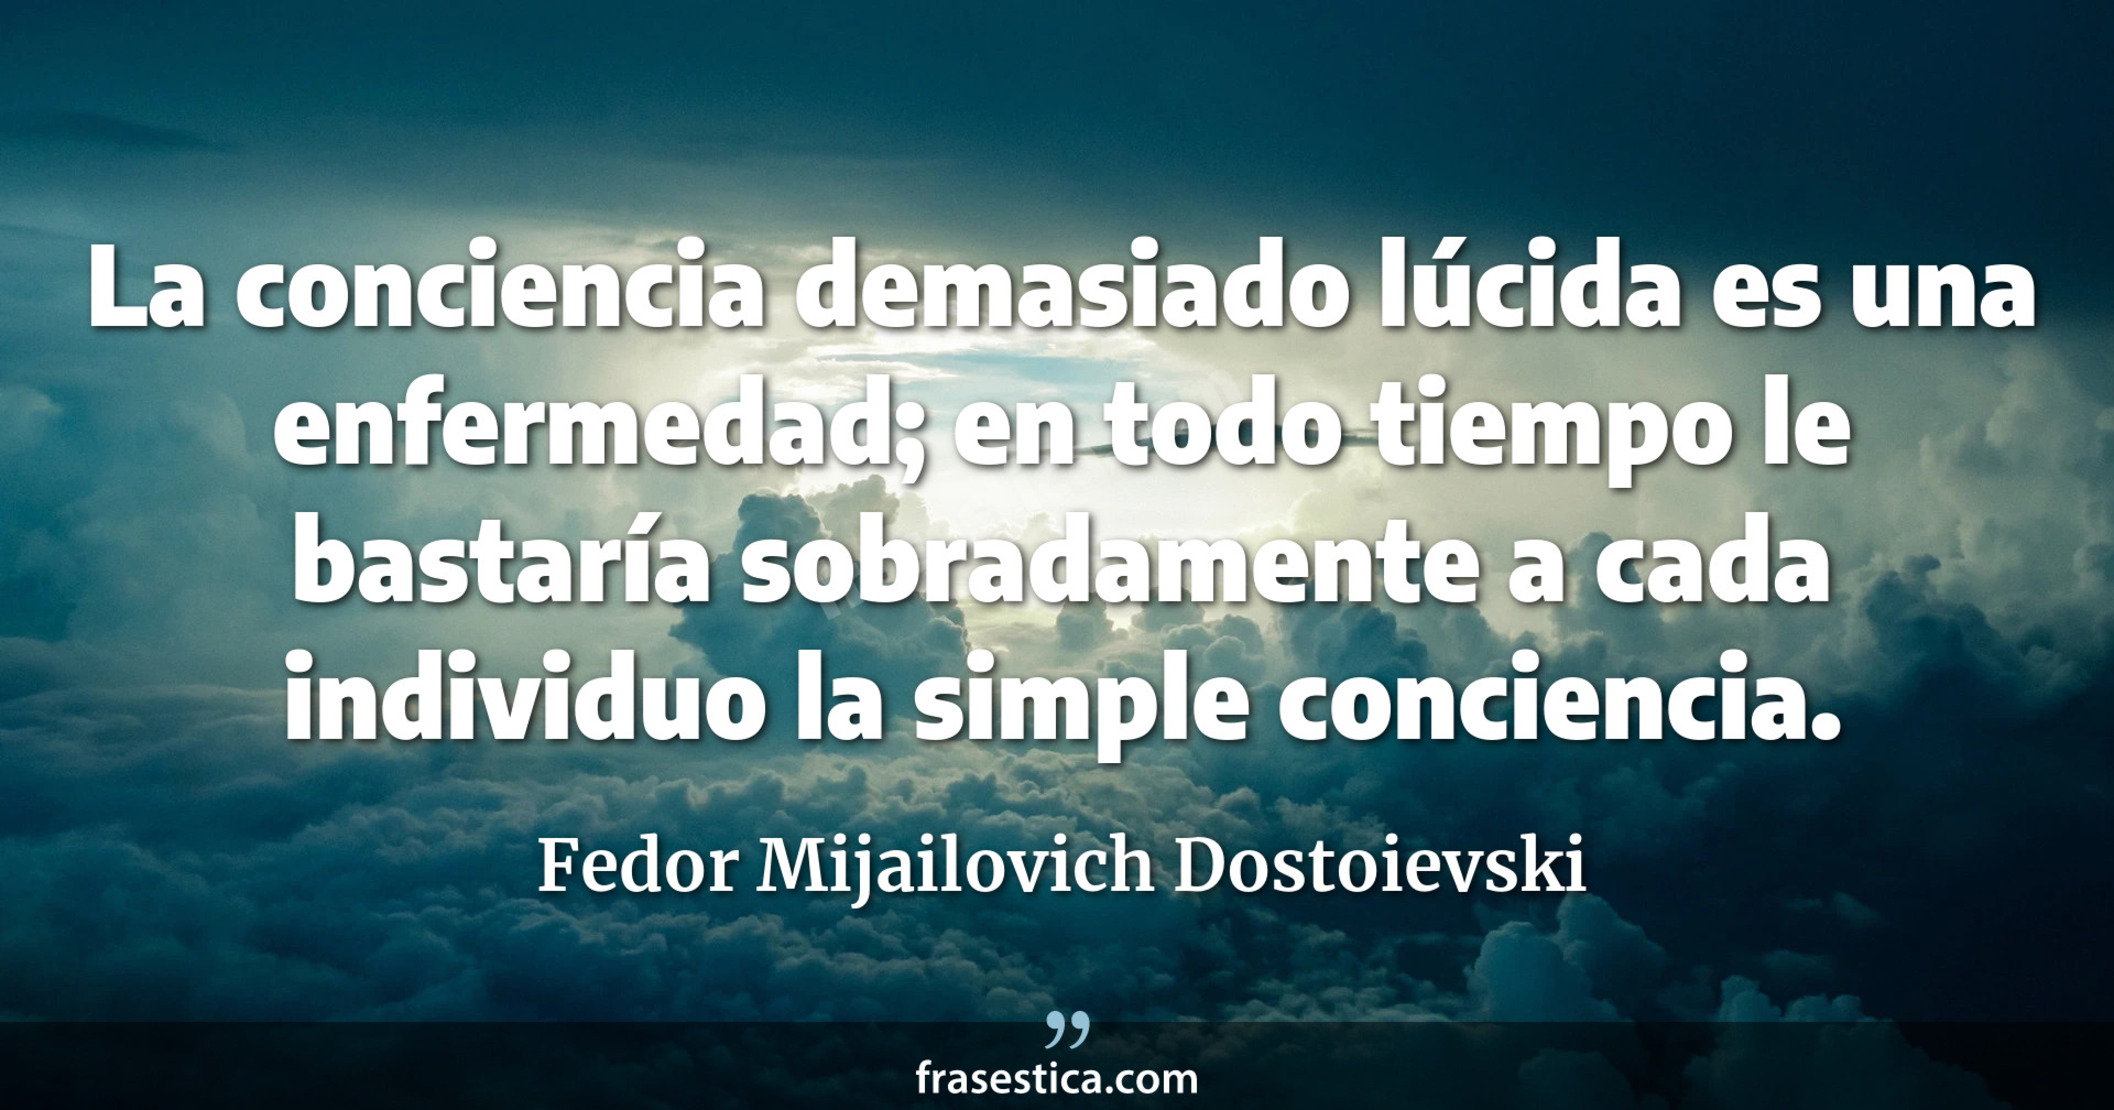 La conciencia demasiado lúcida es una enfermedad; en todo tiempo le bastaría sobradamente a cada individuo la simple conciencia. - Fedor Mijailovich Dostoievski